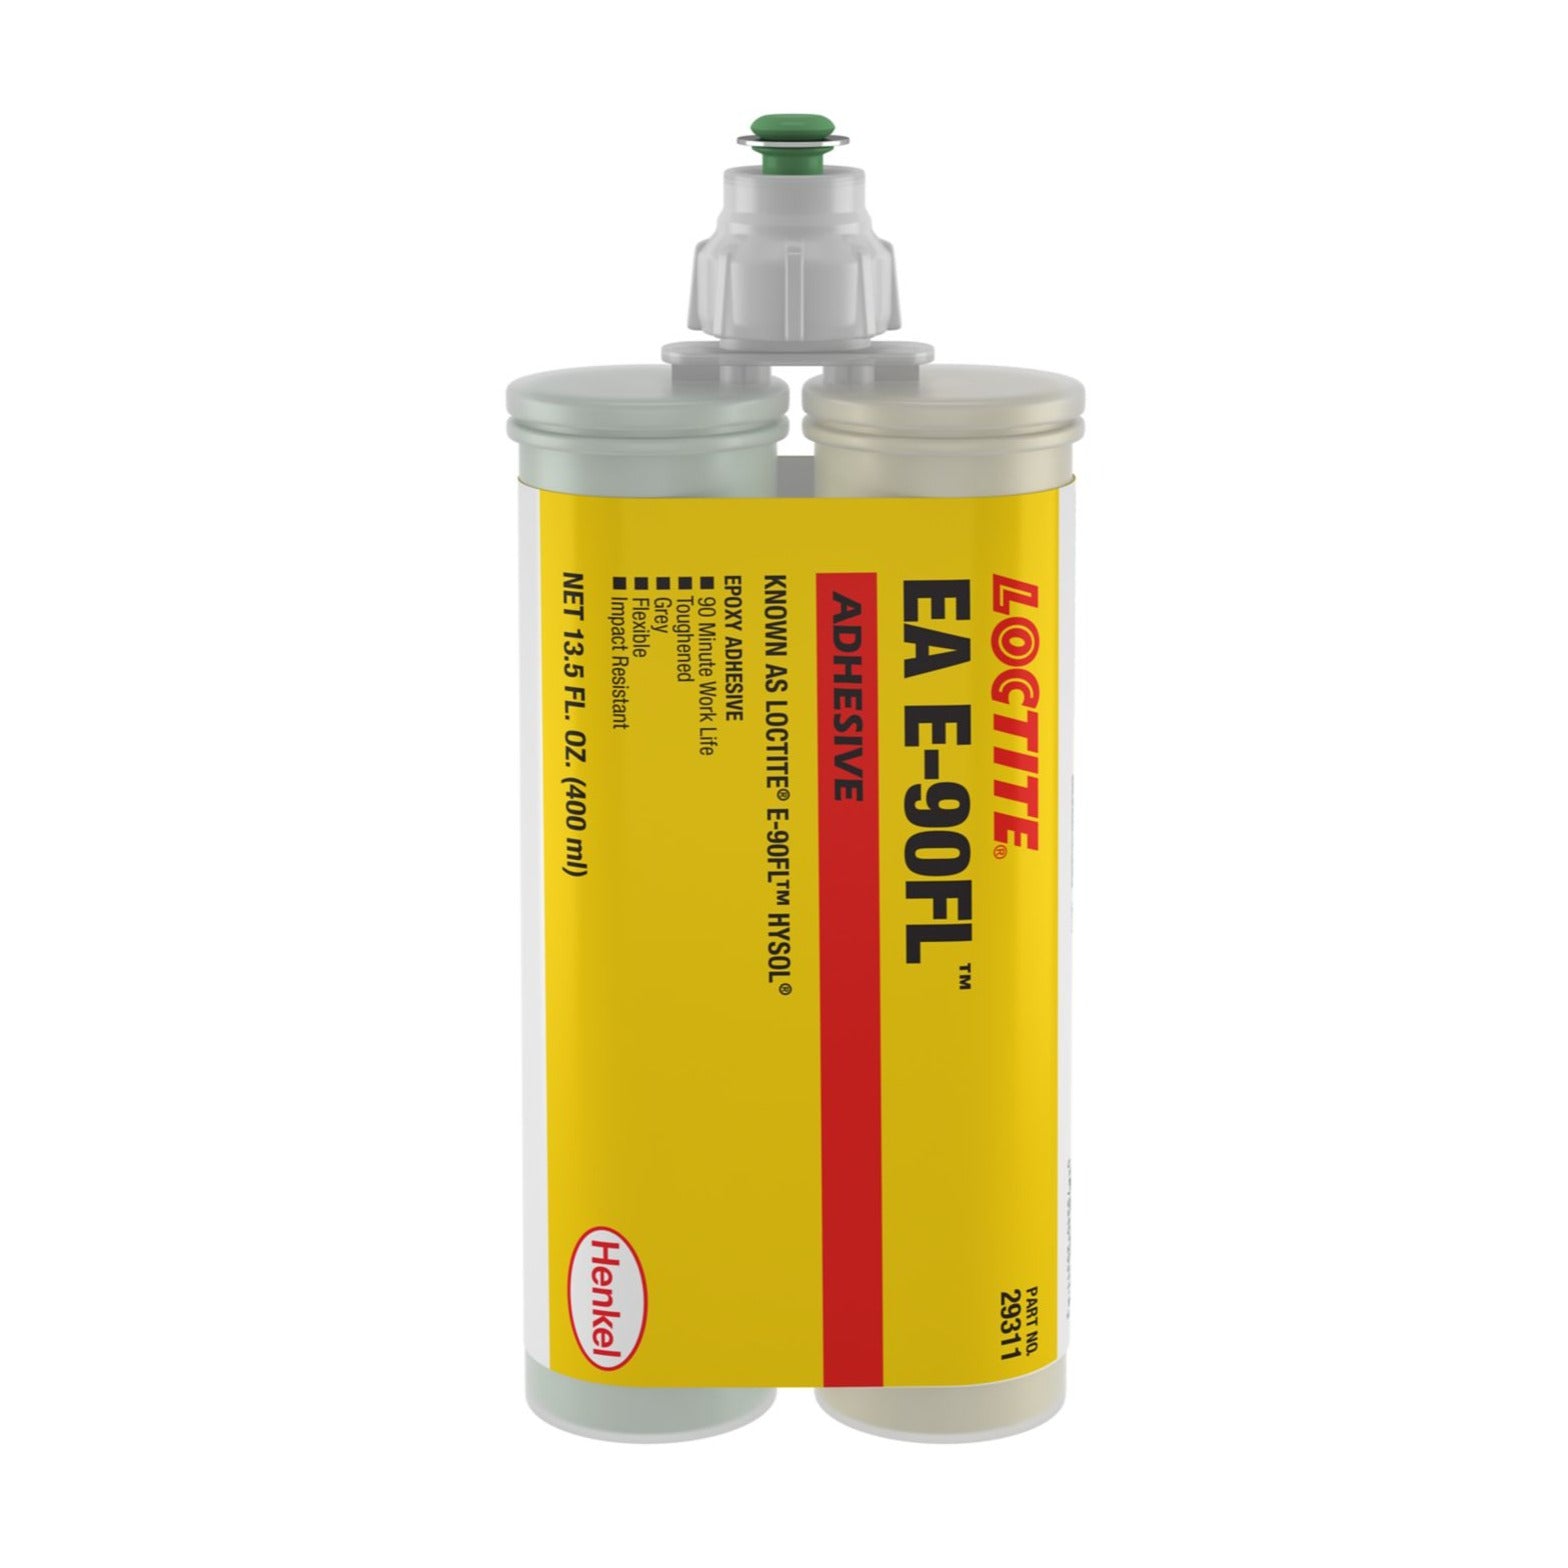 3M Super 90 Adhesive Spray EA